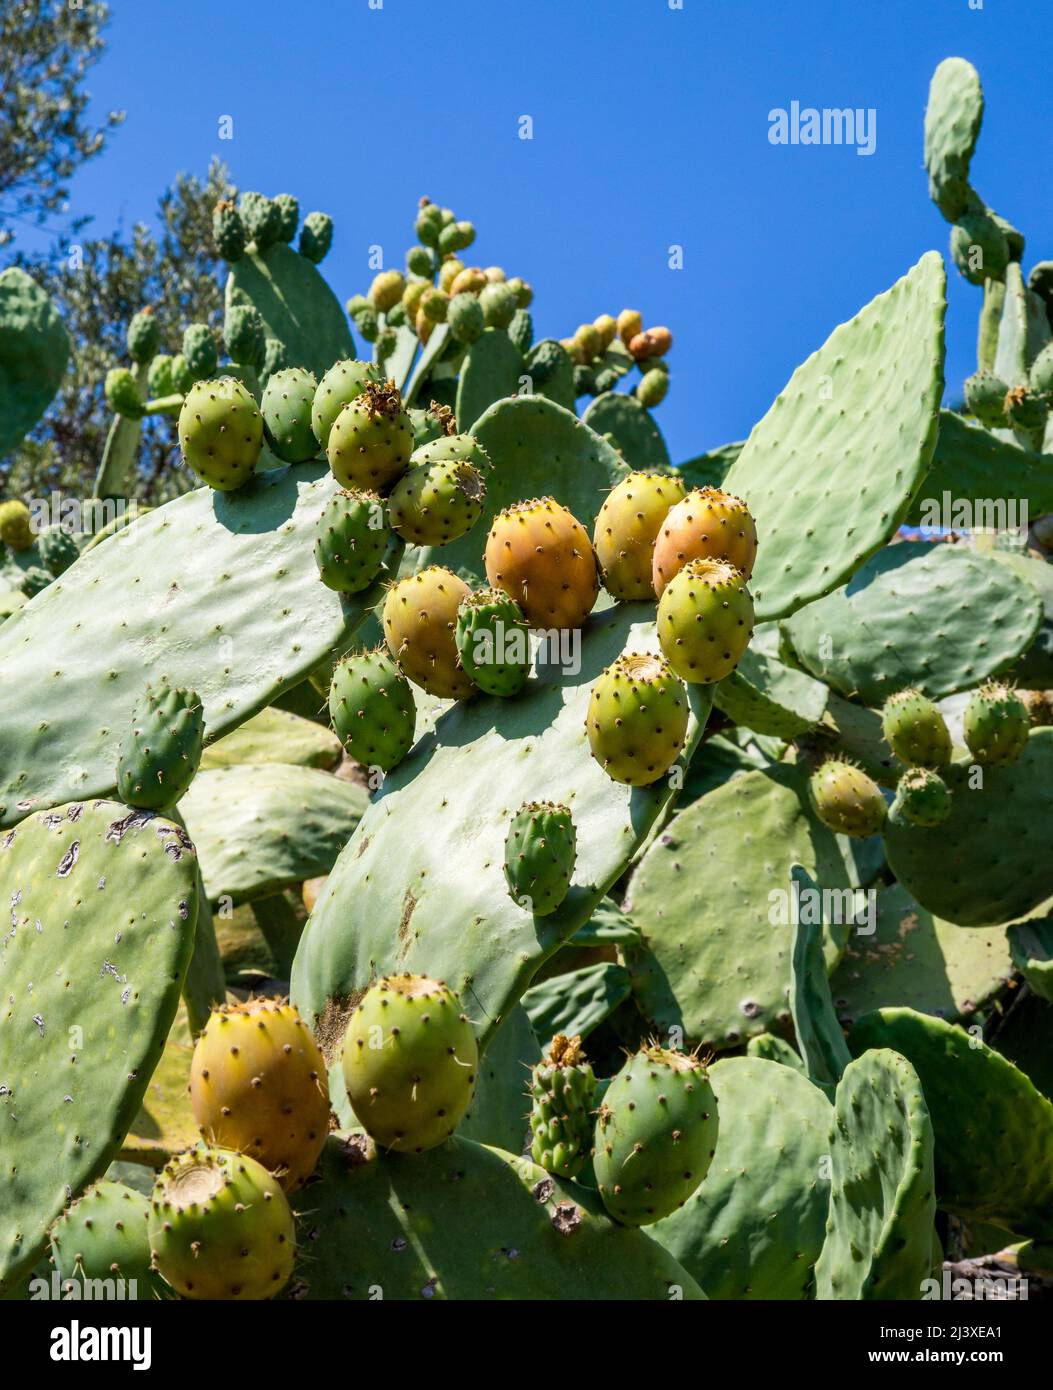 Opuntia Kaktus oder Stachelpfirsich mit essbaren neuen Triebe - Alonissos Griechenland Stockfoto